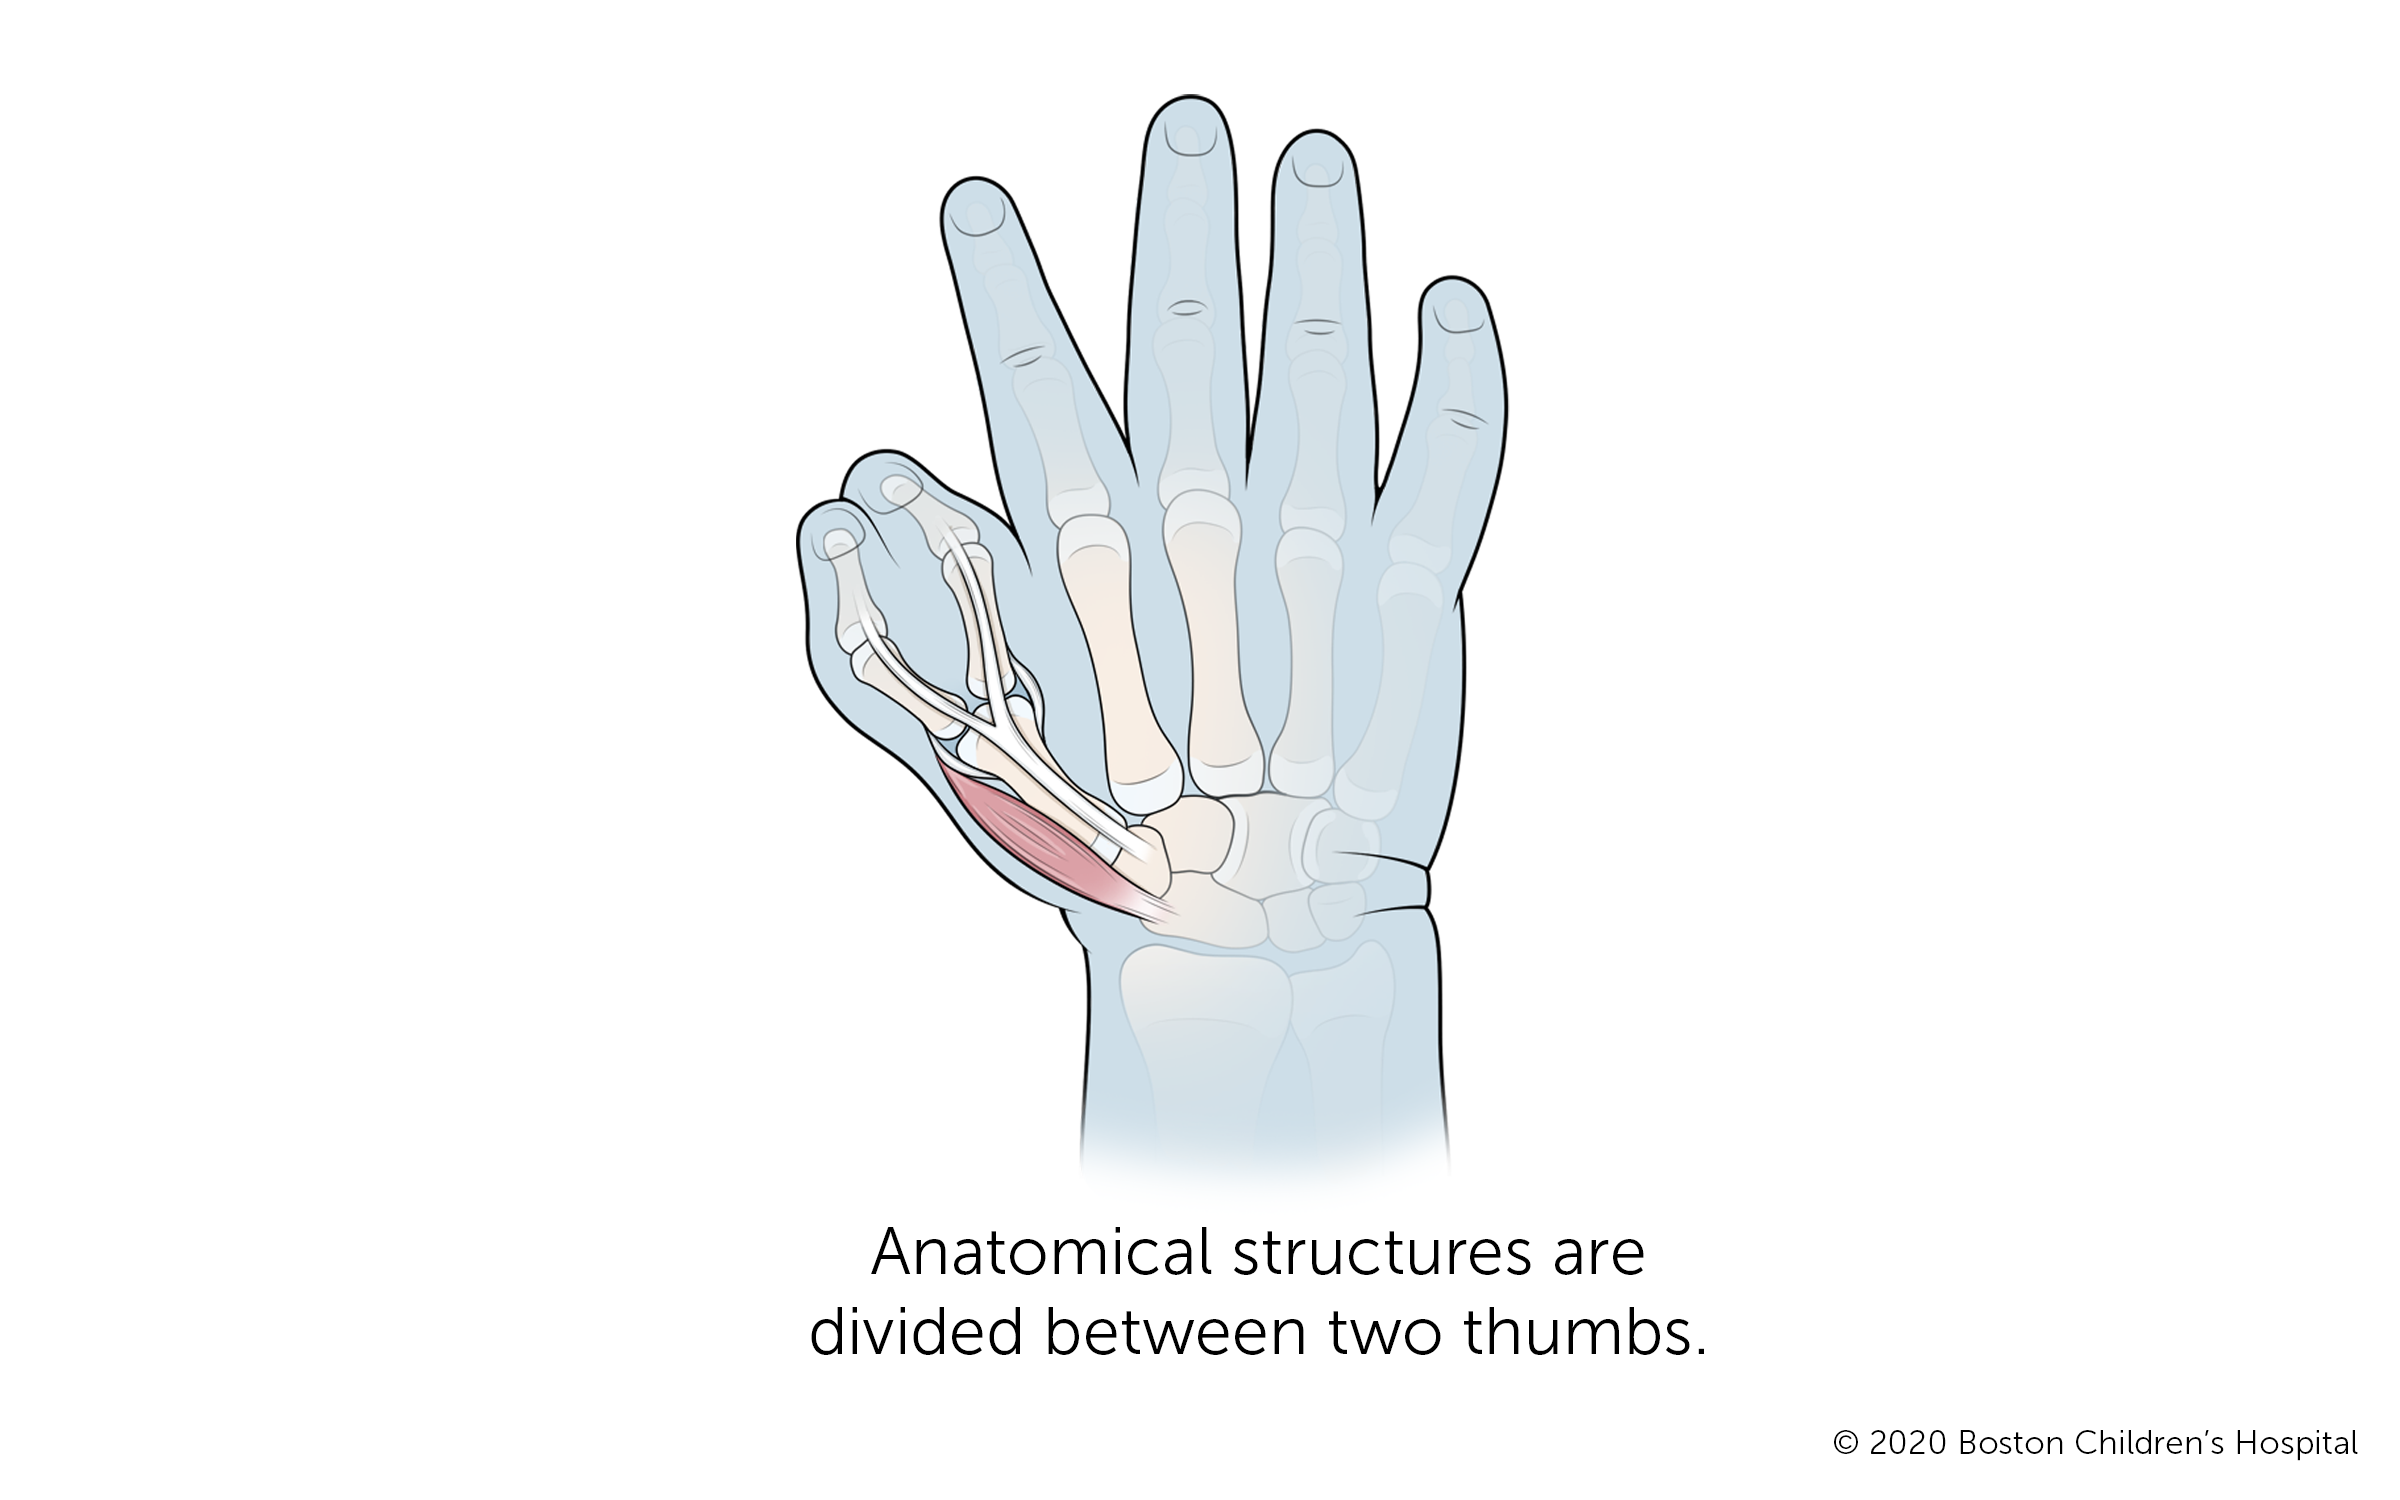 有两个拇指的手，其解剖结构被分为两个拇指拇指骨在拇指关节处分叉成两块由皮肤相连的骨头。